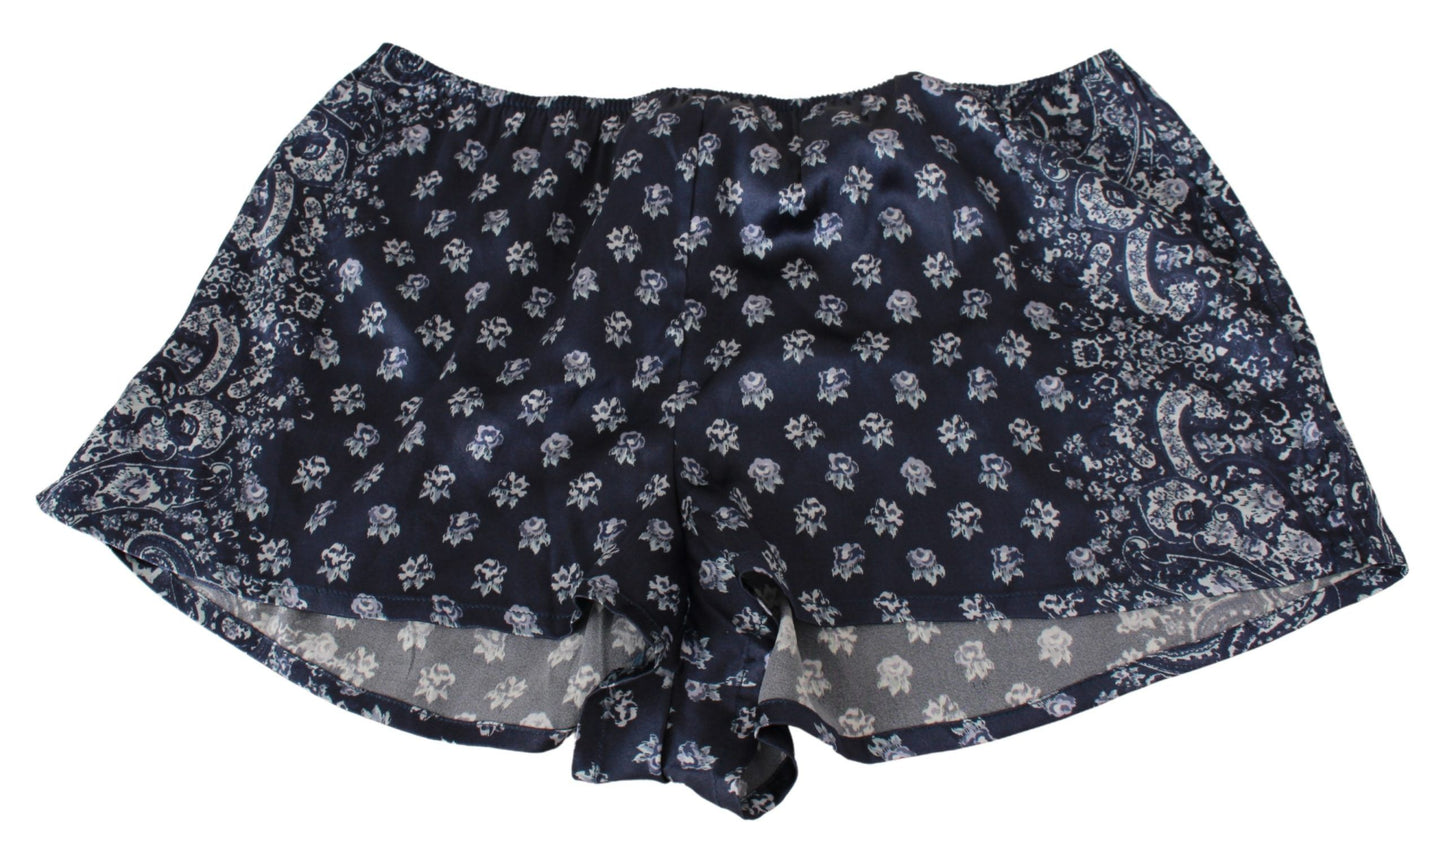 Italian Silk Lingerie Shorts in Serene Blue